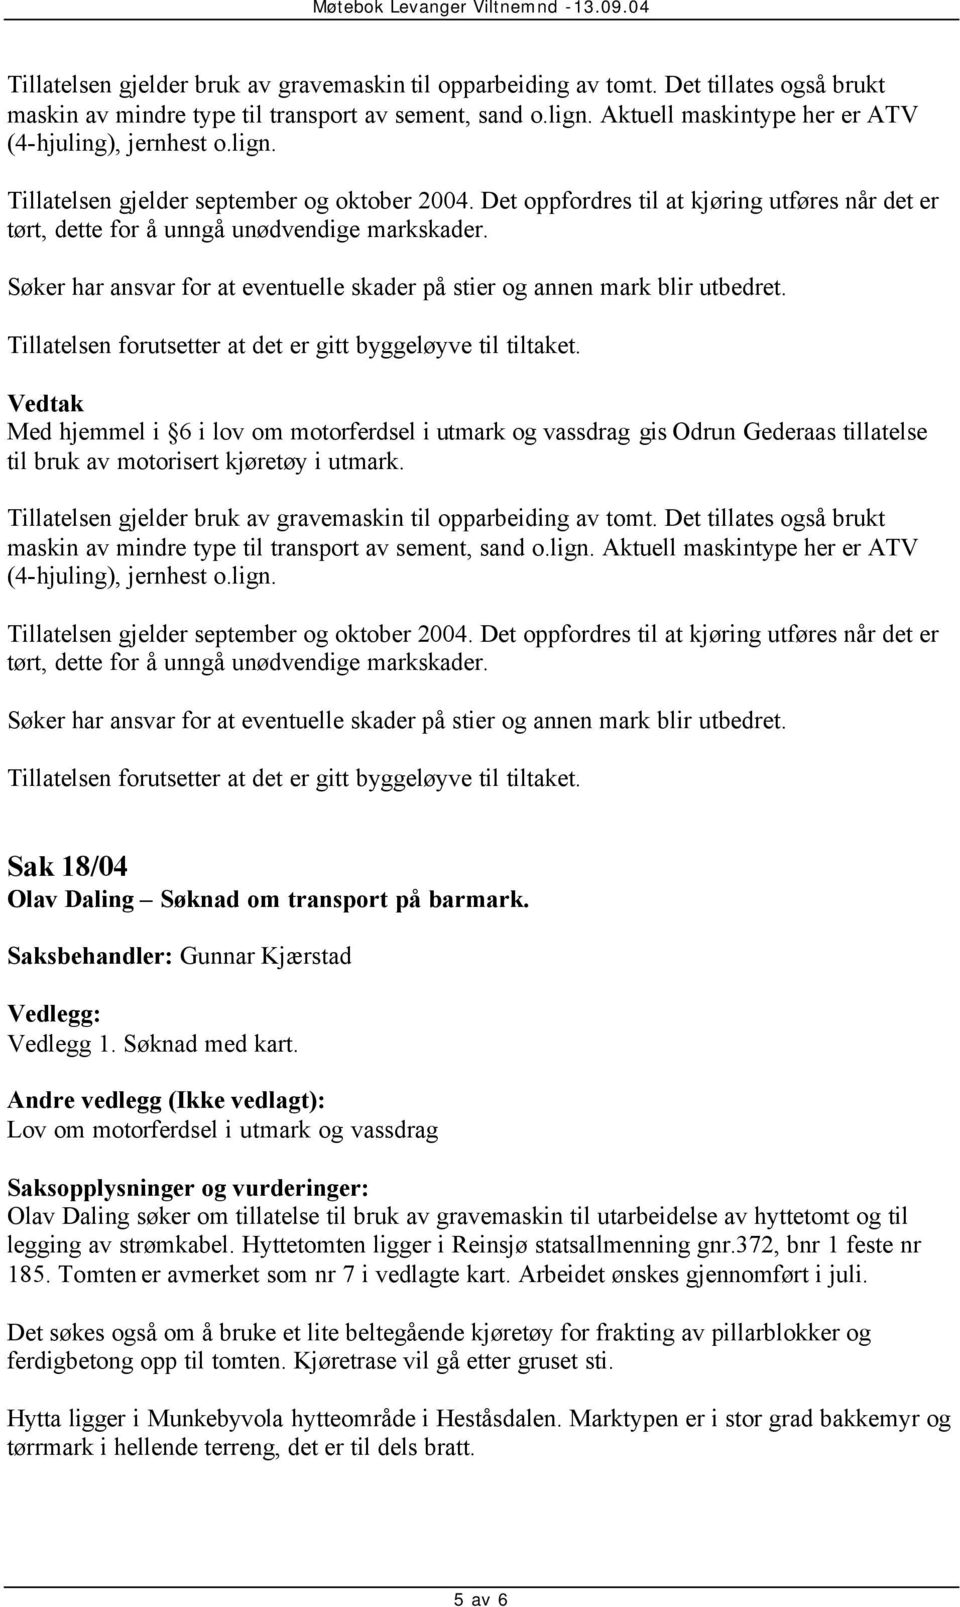 Aktuell maskintype her er ATV (4-hjuling), jernhest o.lign. Sak 18/04 Olav Daling Søknad om transport på barmark. Vedlegg 1. Søknad med kart.